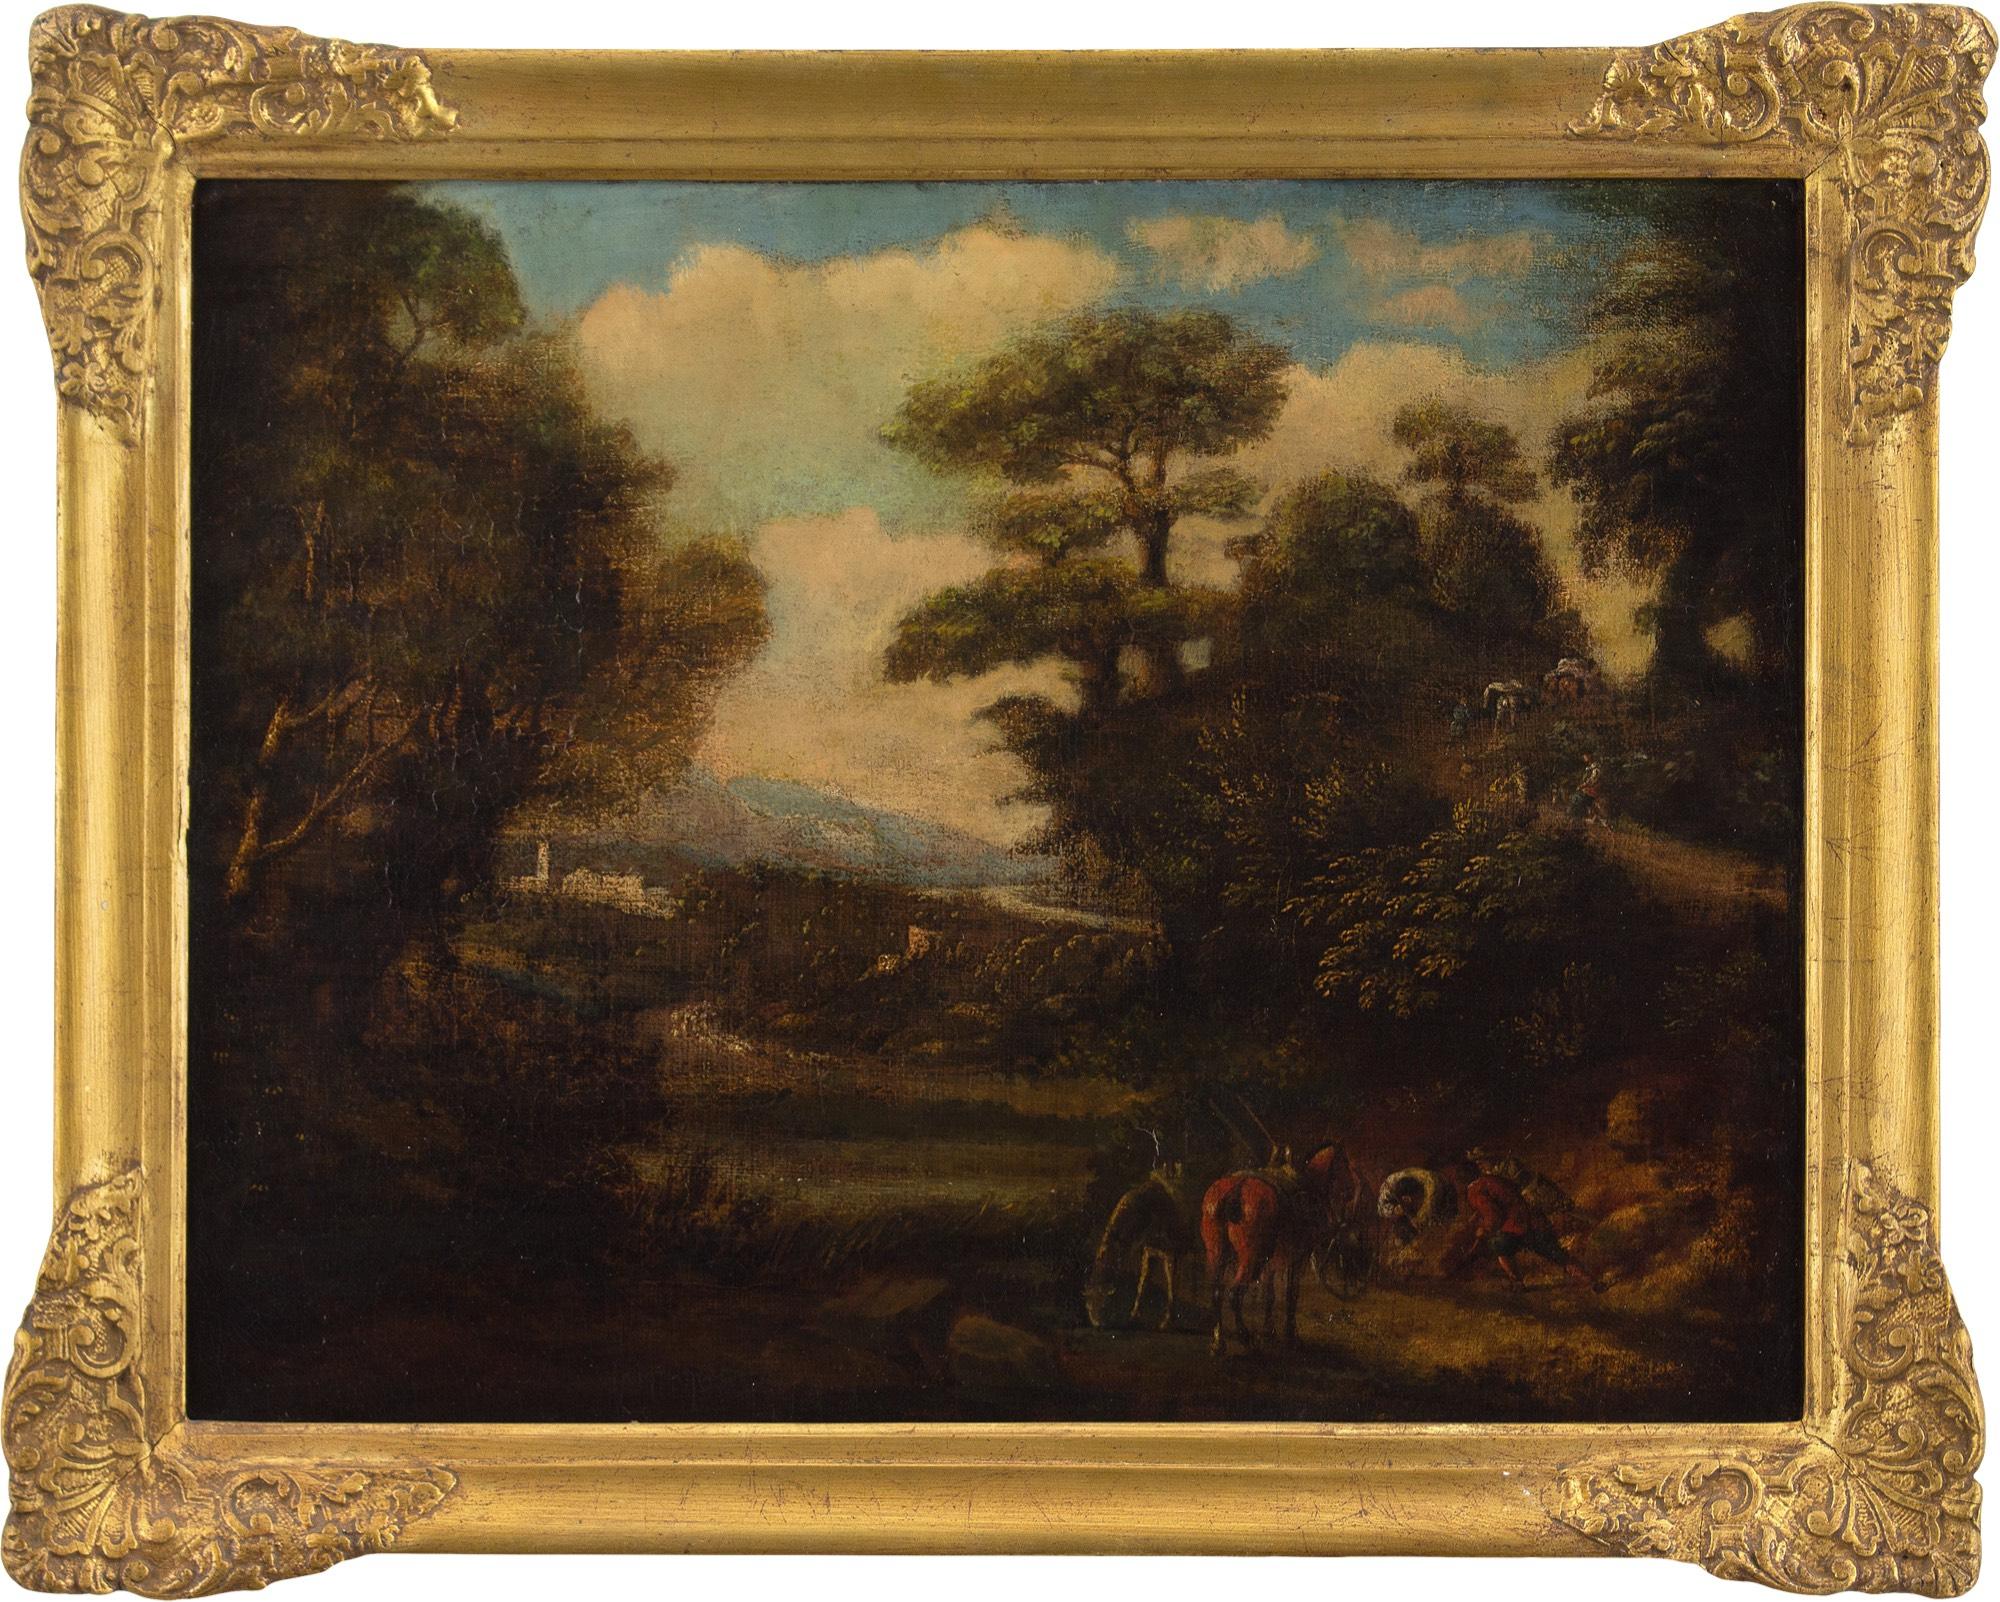 Paysage idéalisé à l'italienne du début du 18e siècle avec personnages et bétail